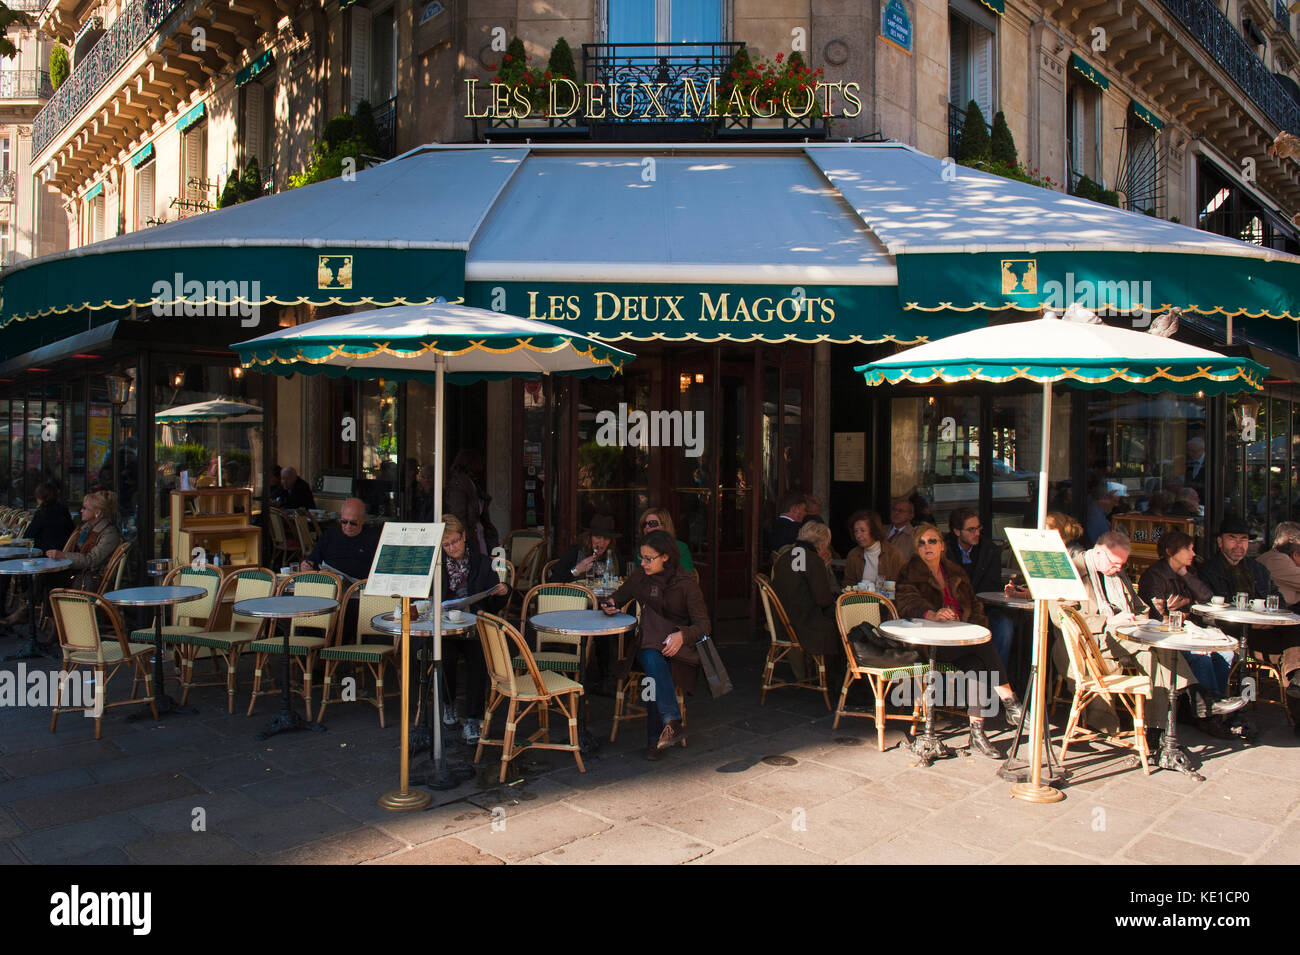 Café Les Deux Magots, Saint Germain des Pres, Paris, Frankreich Café Les Deux Magots, Saint Germain des Pres, Paris, Frankreich Stockfoto